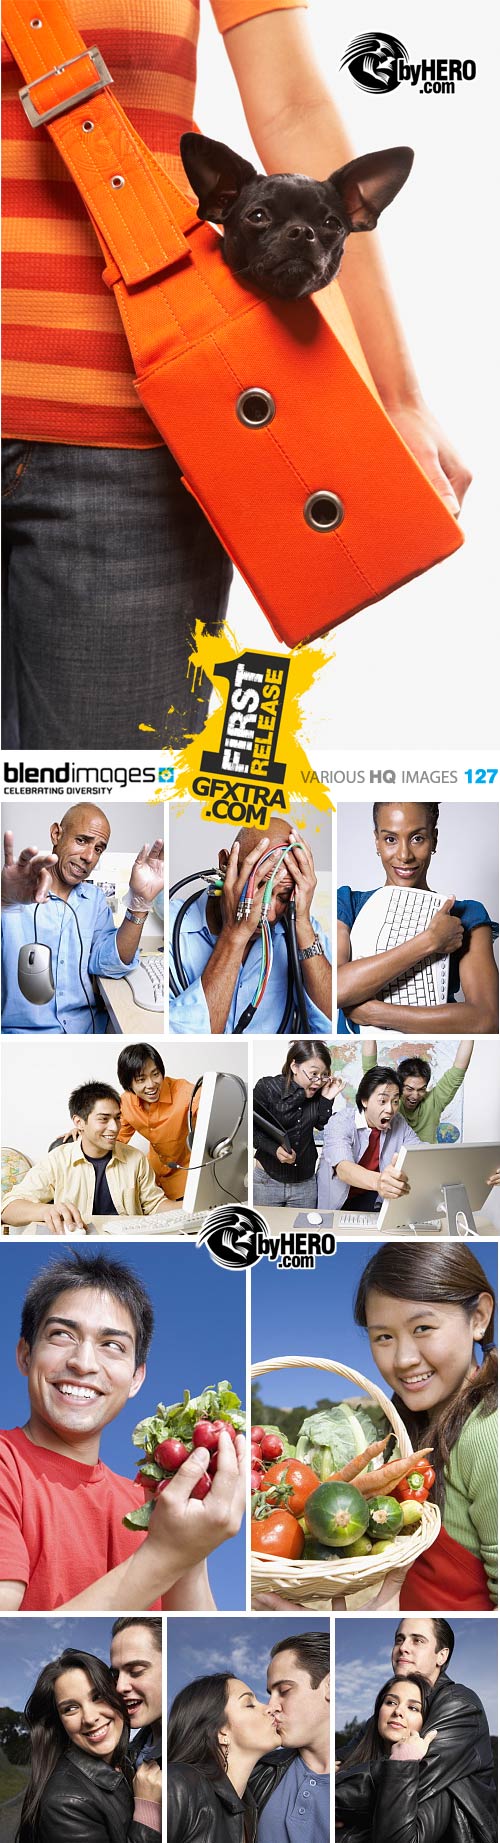 BlendImages - Various HQ Images 127